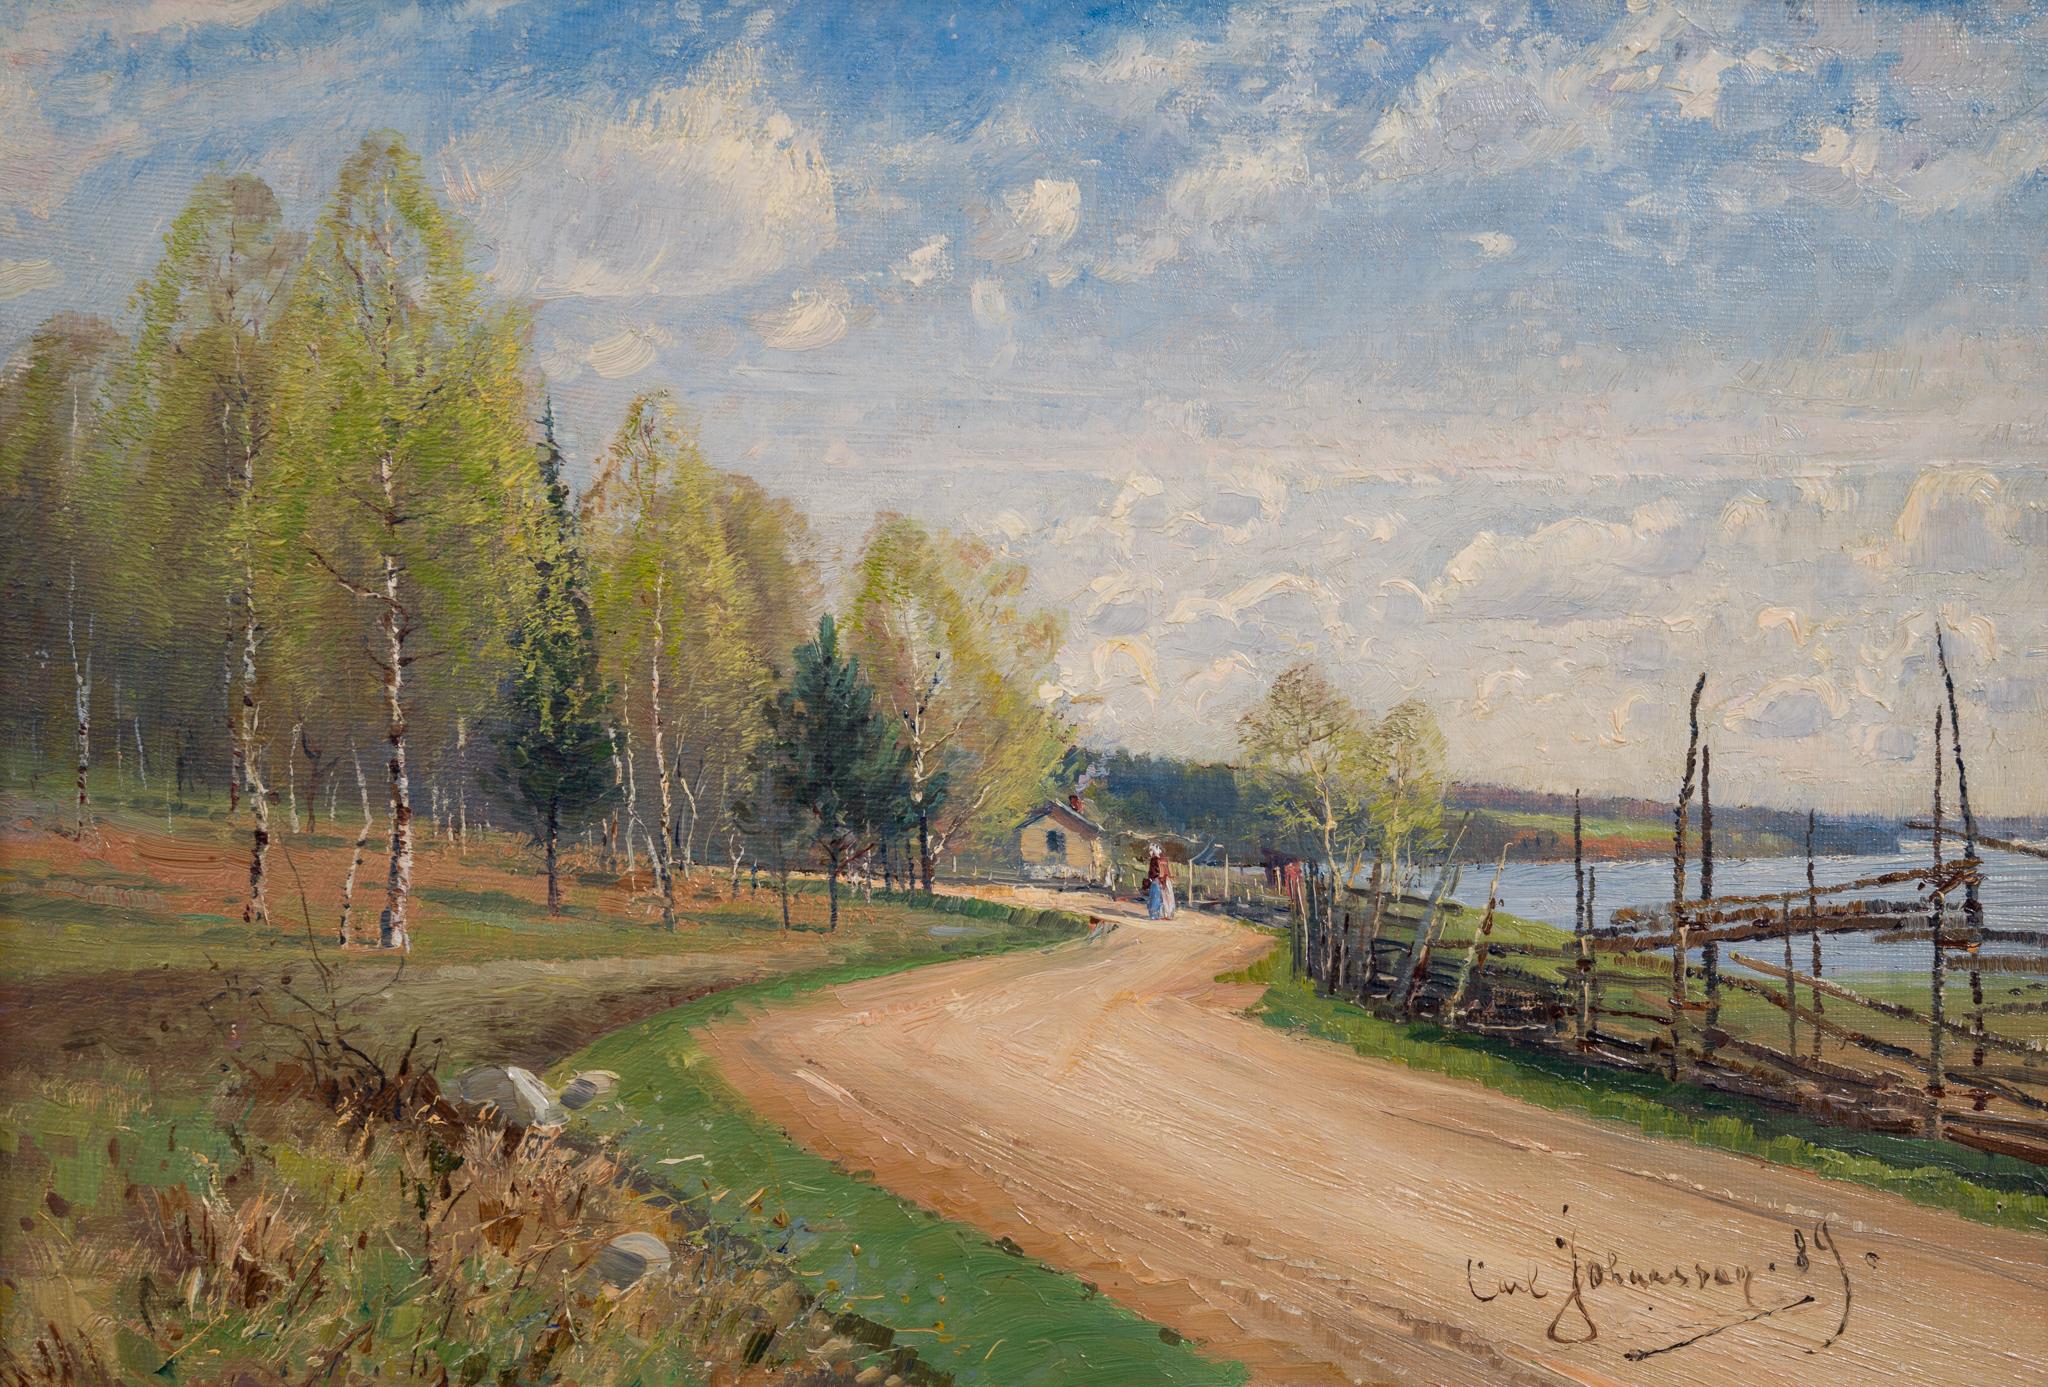 Paysage d'été impressionniste avec peinture de route peint en 1889 - Impressionnisme Painting par Carl Johansson 